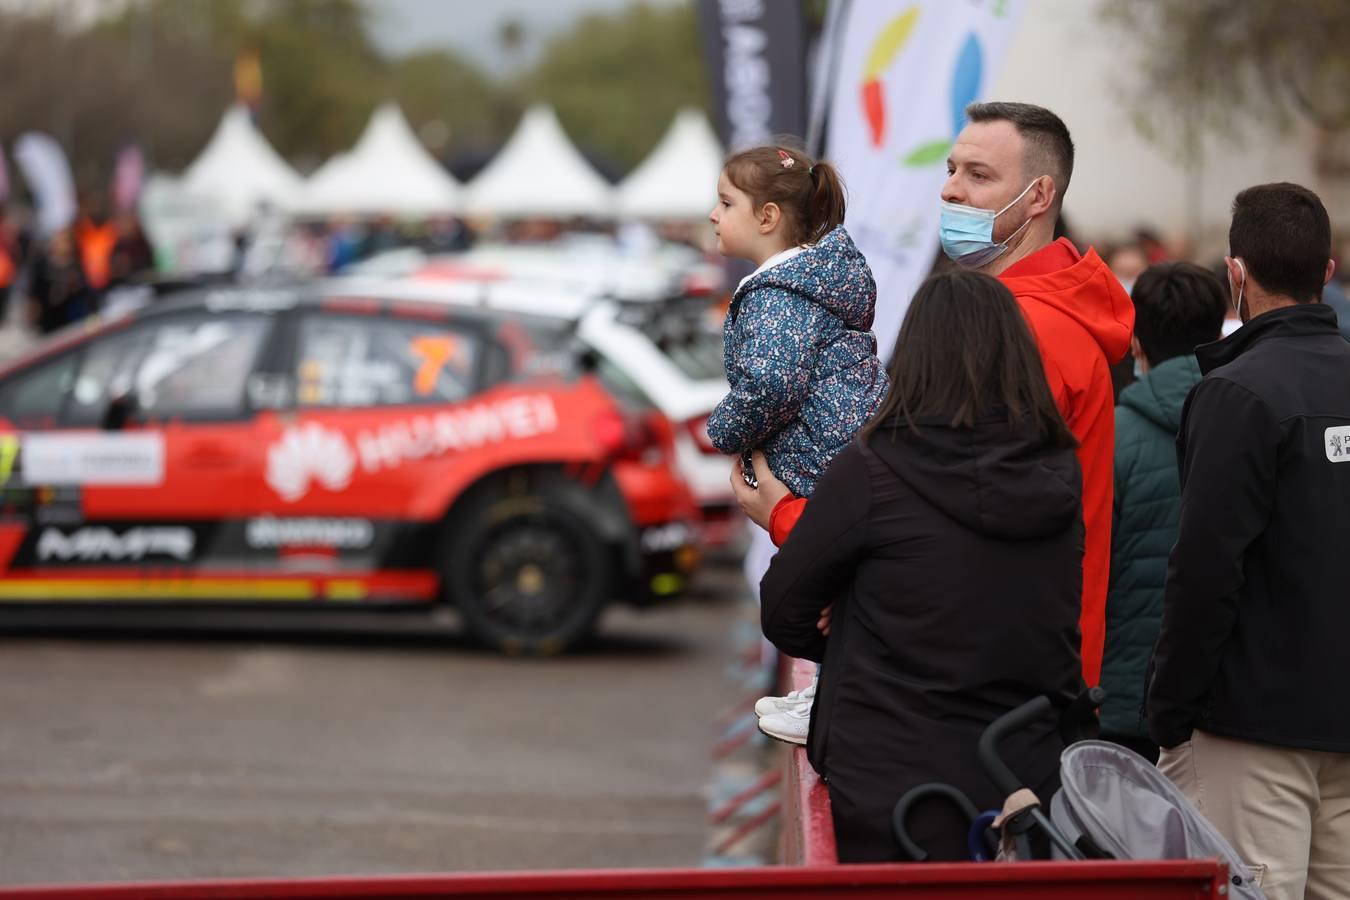 La ceremonia de salida del Rallye Sierra Morena 2022, en imágenes